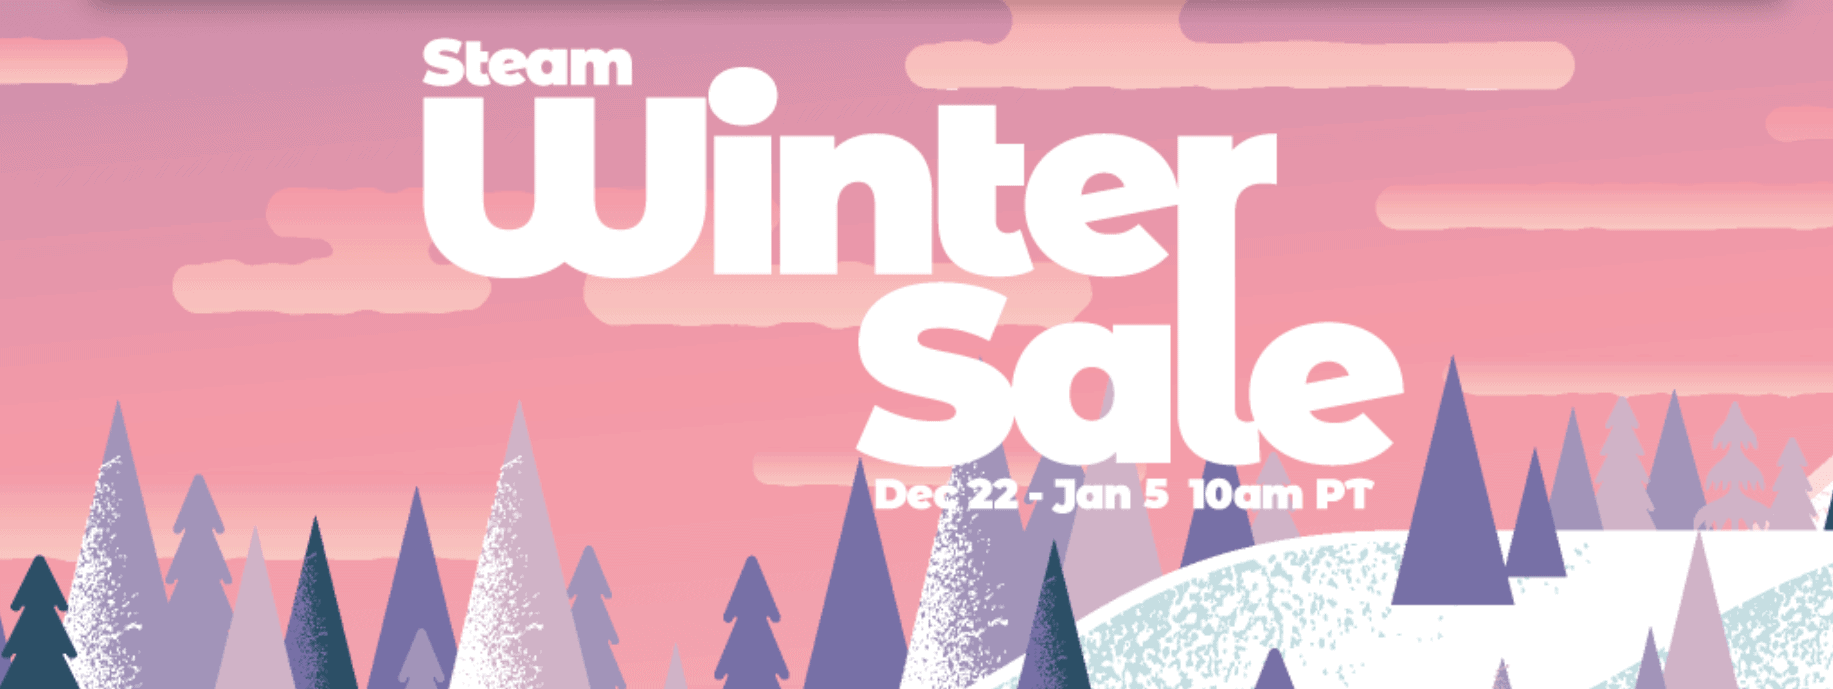 steam winter sale 2020